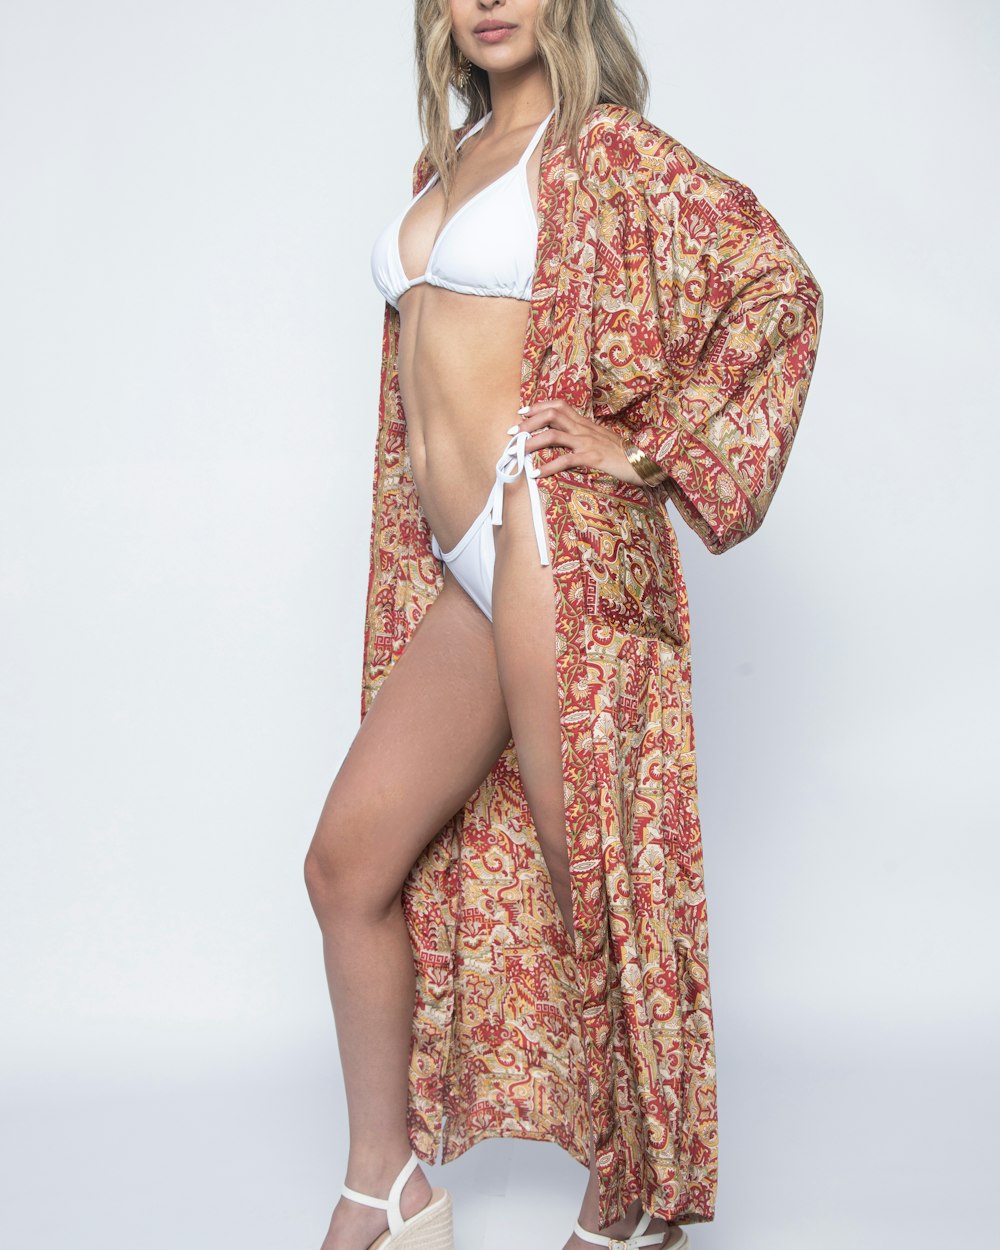 a woman in a bikini and kimono